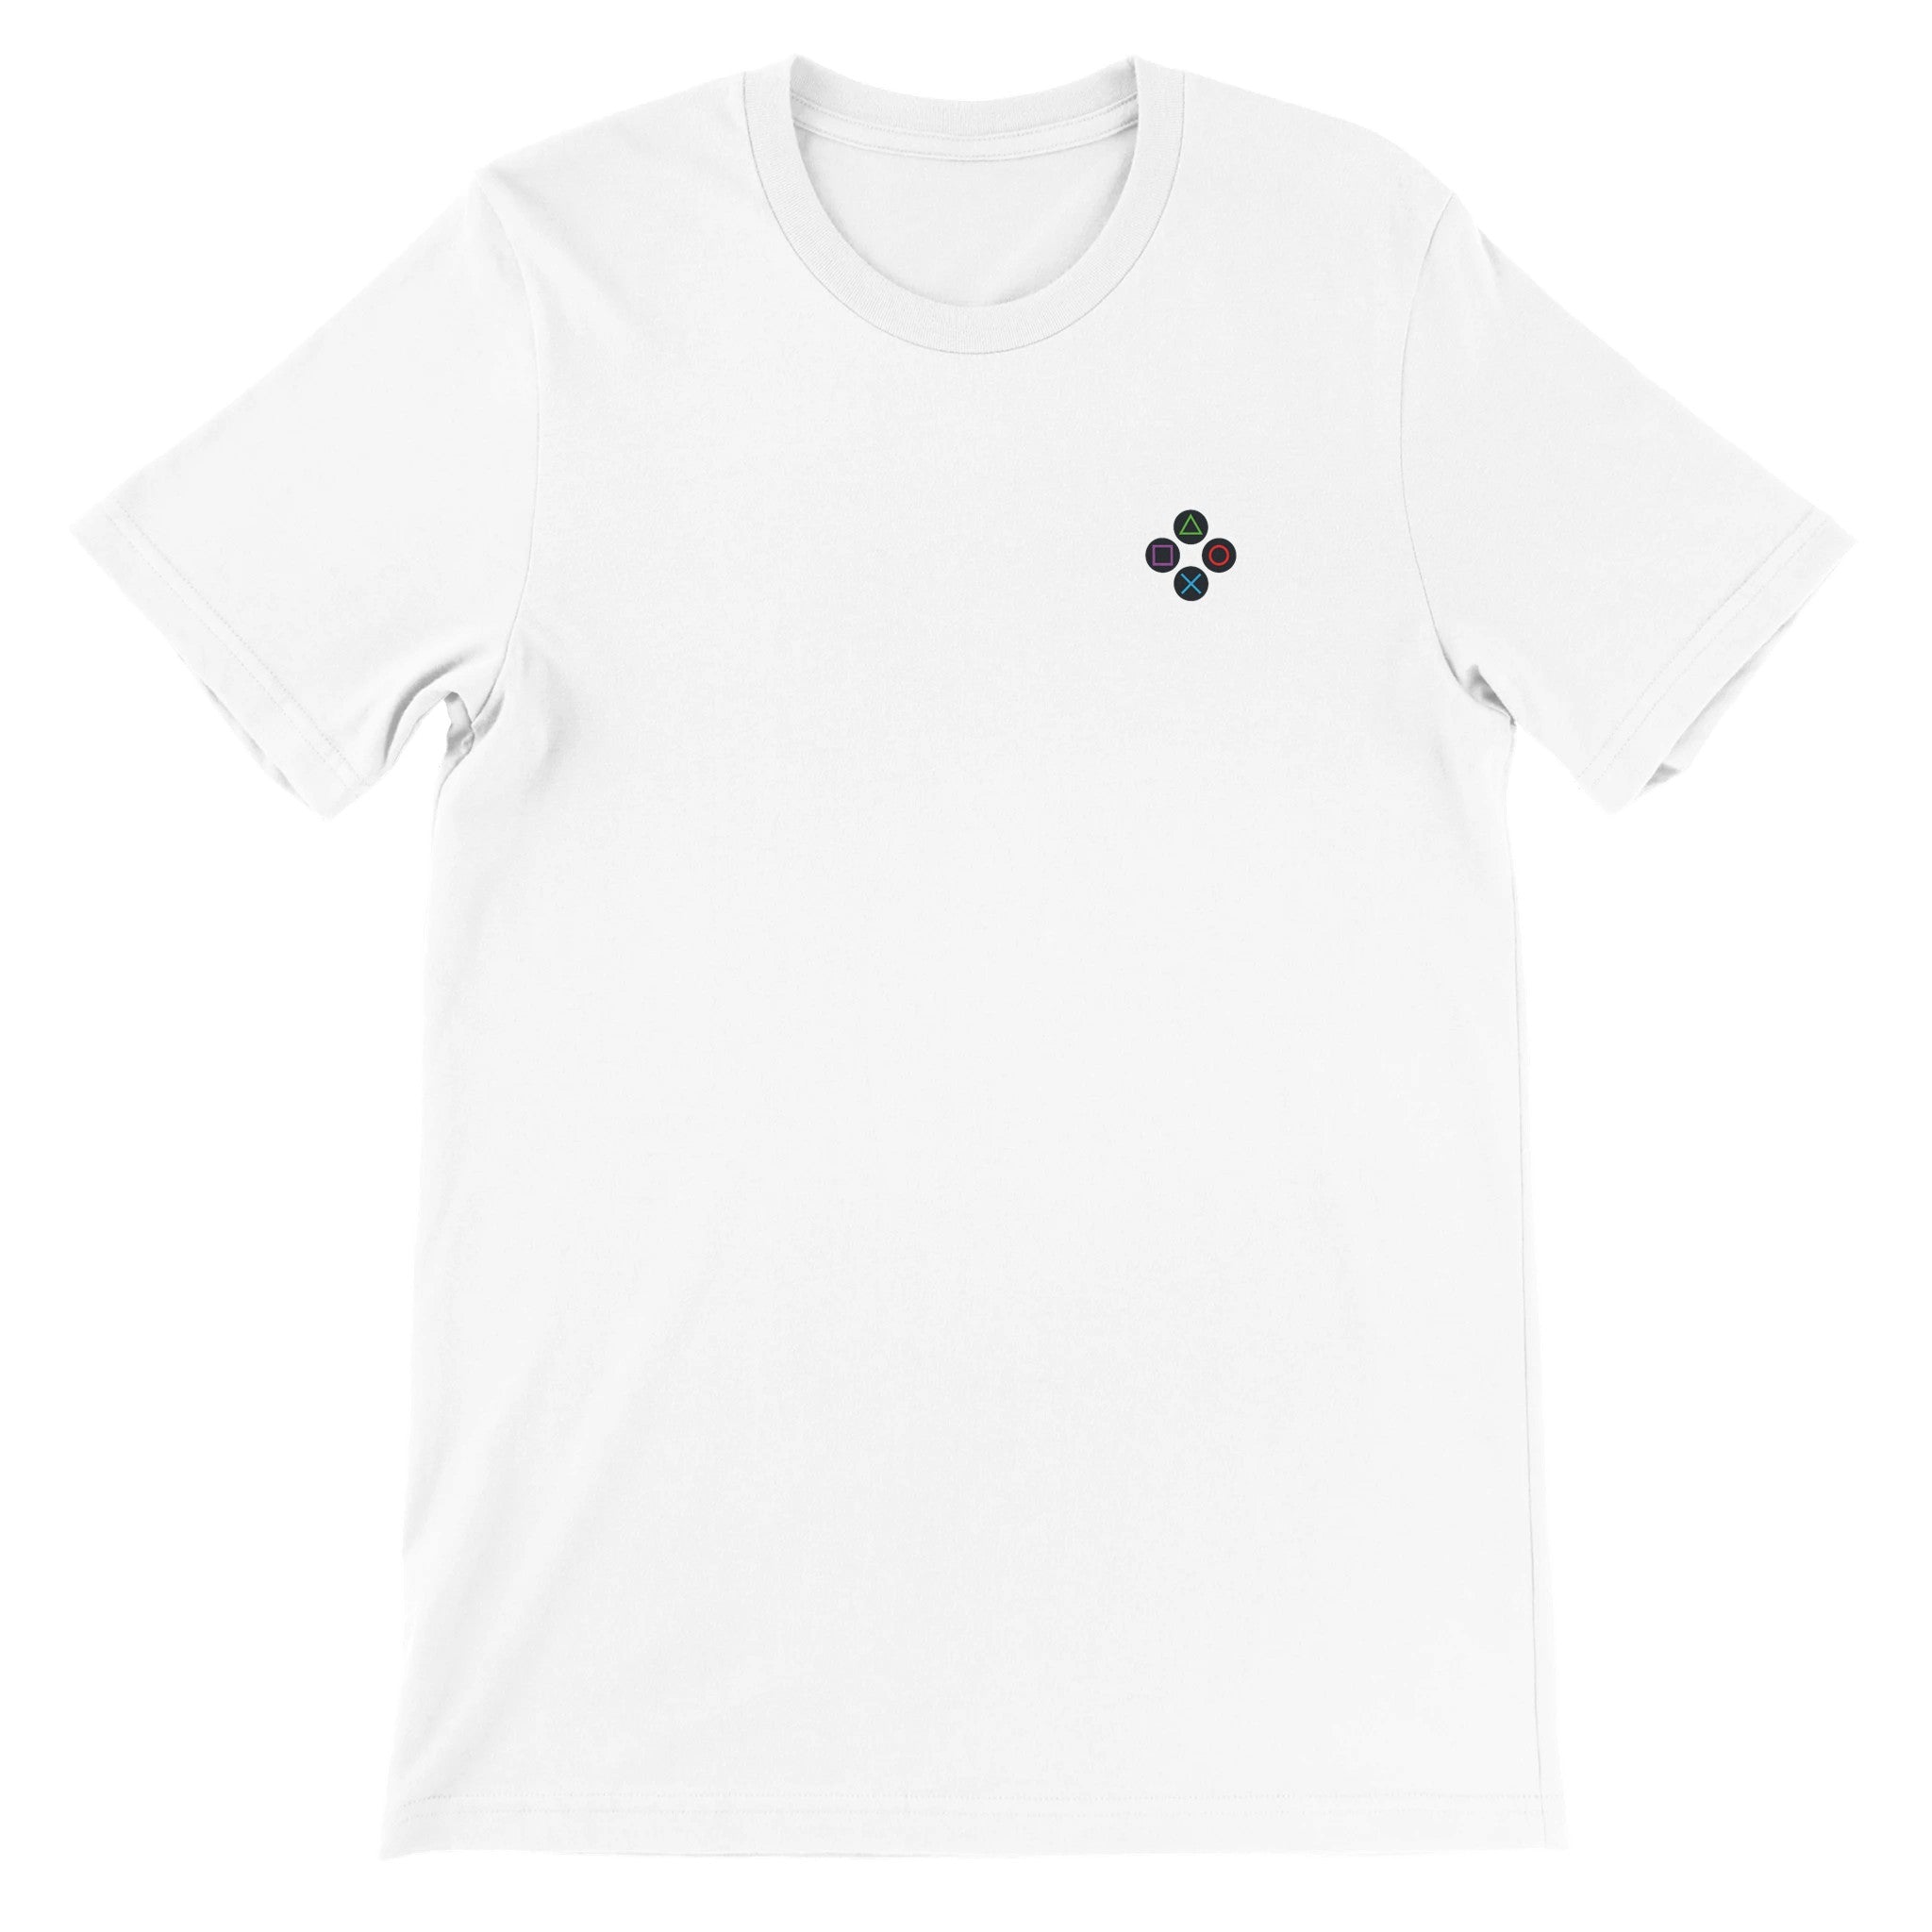 Clean Buttons Crewneck T-shirt - Optimalprint